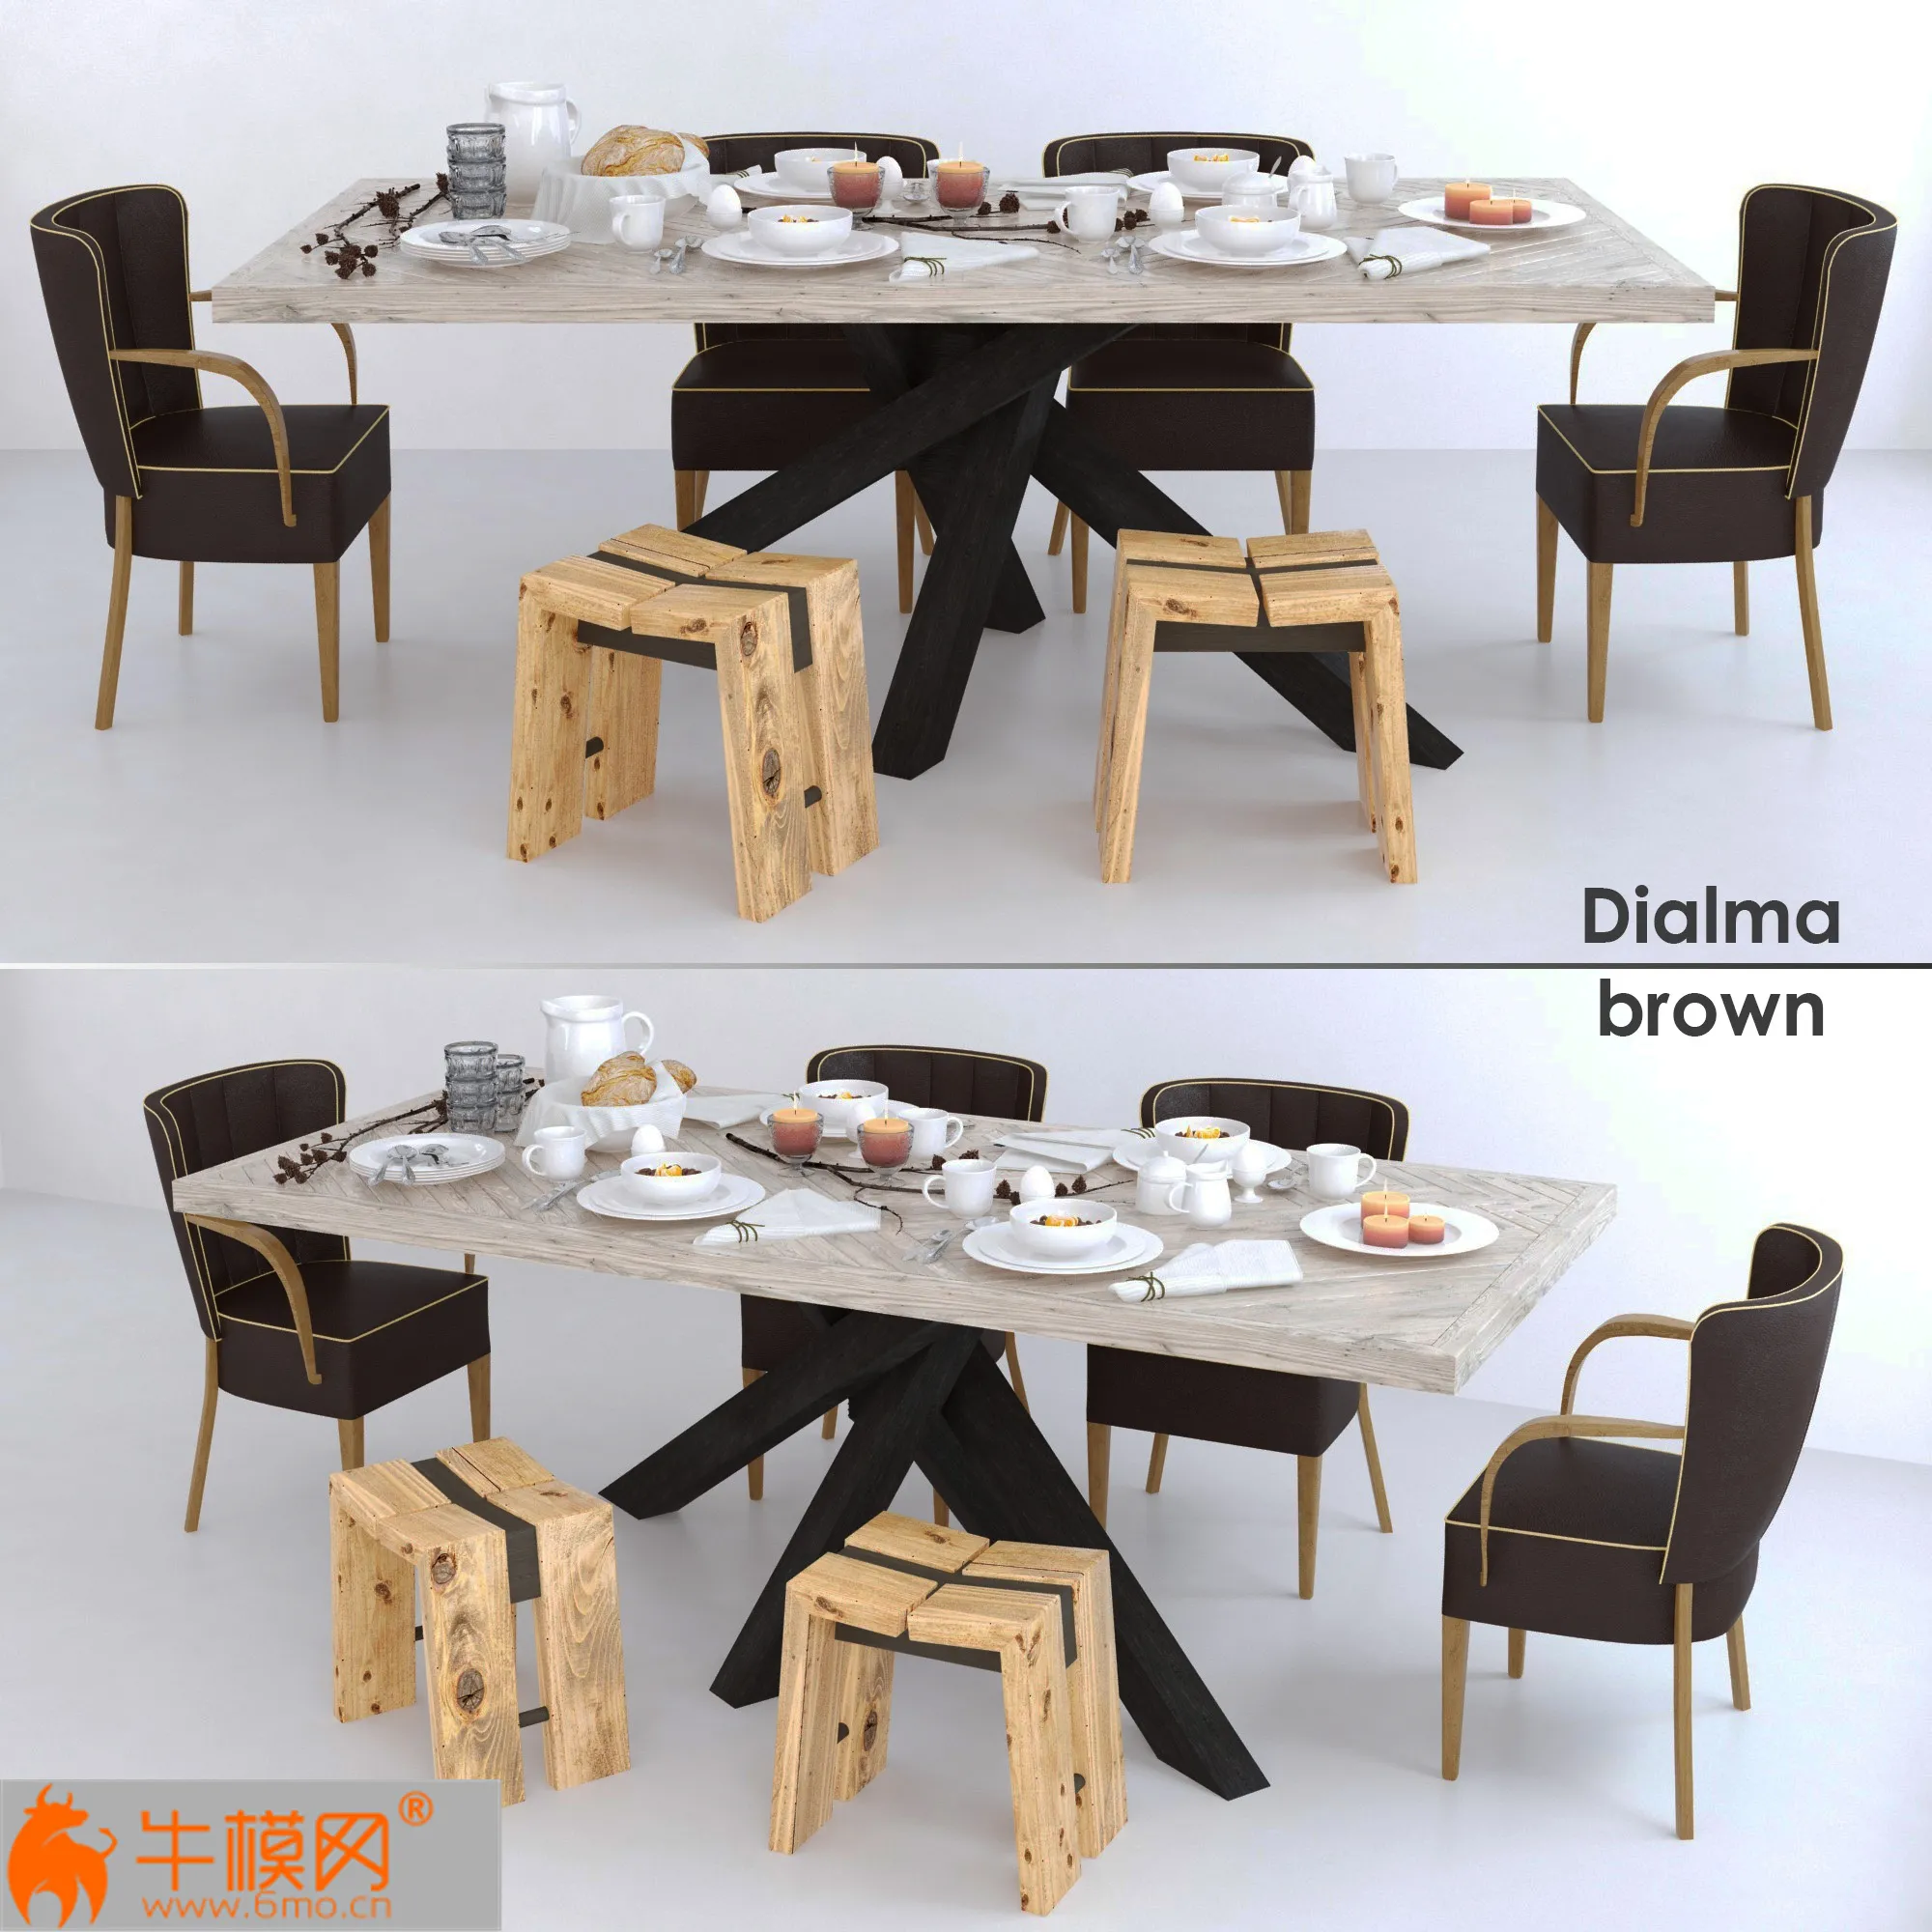 Table Chair Dialma – 4237